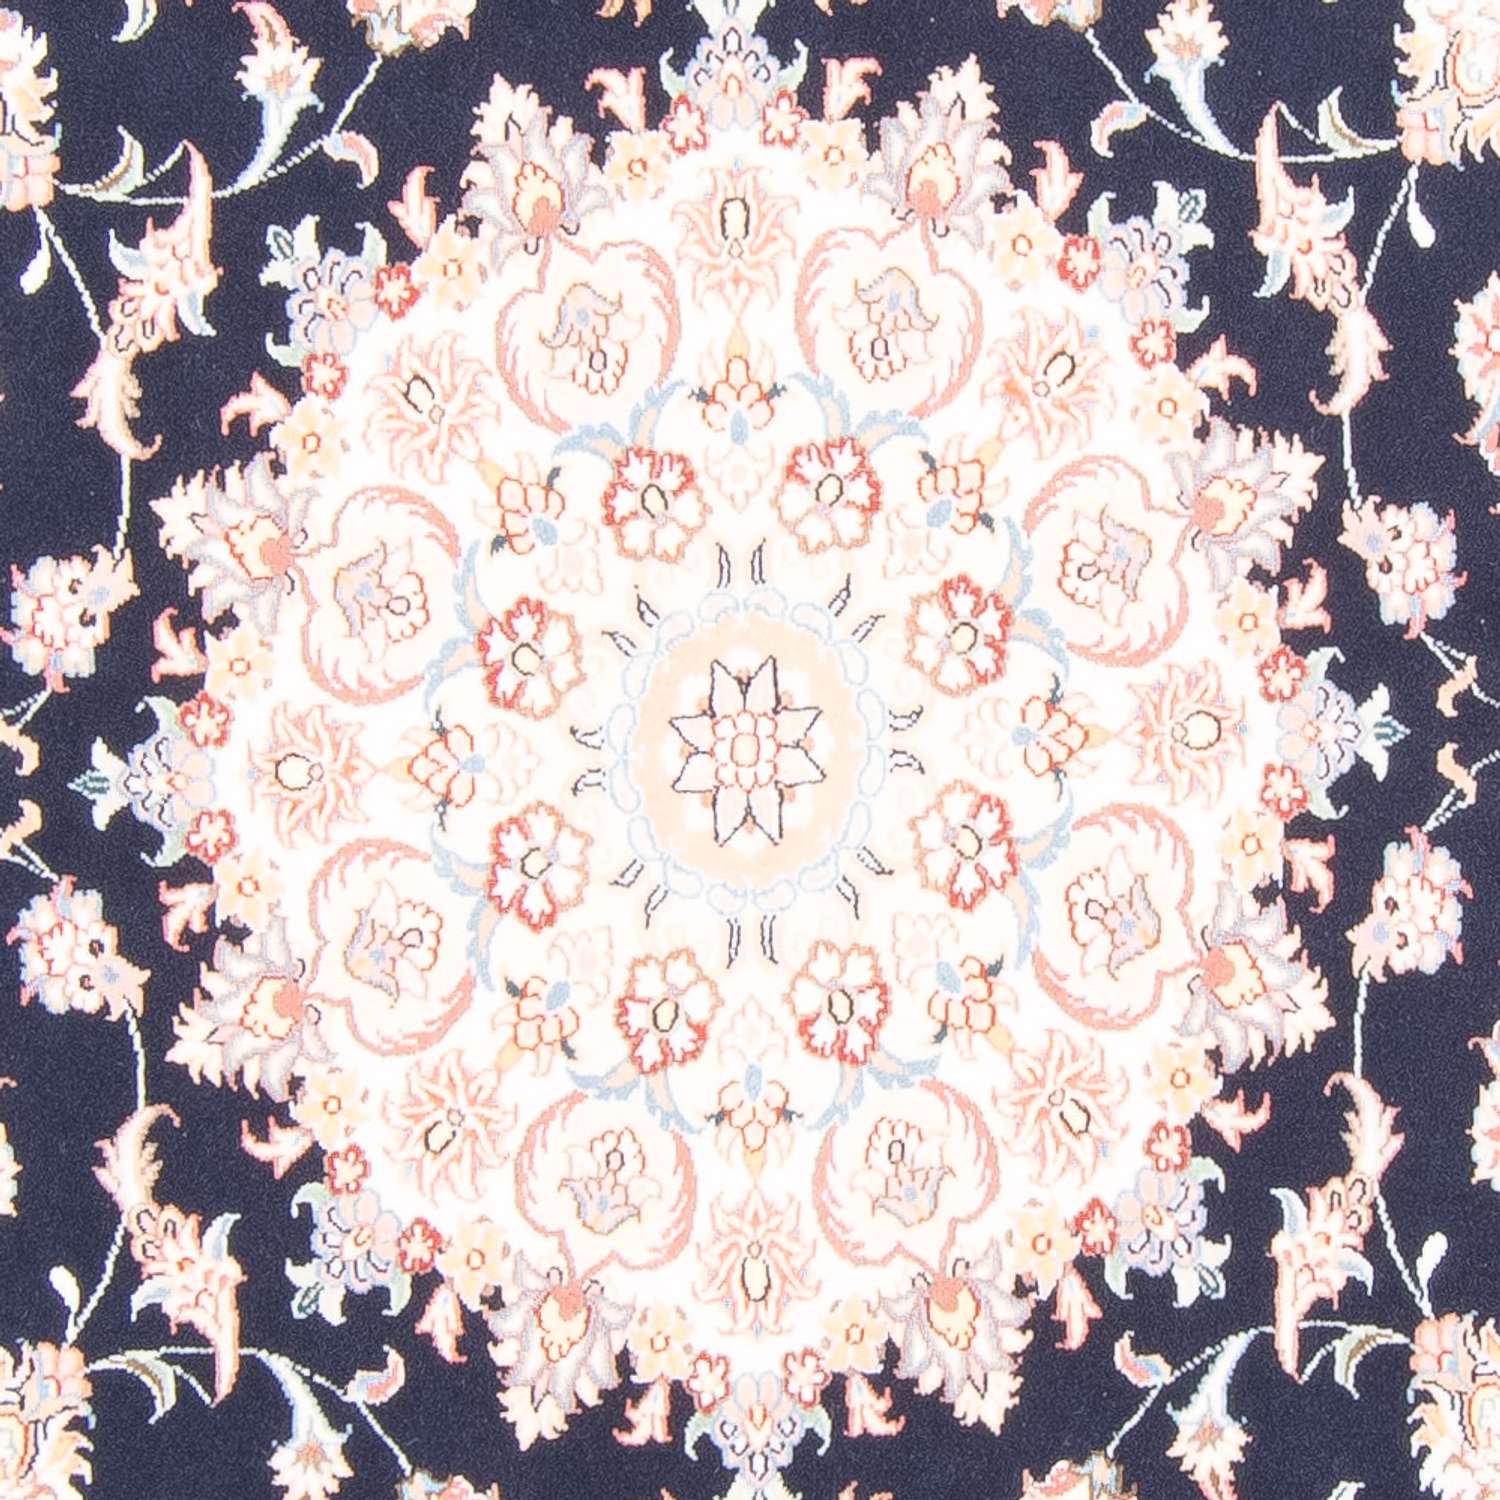 Persisk teppe - Tabriz - Royal - 245 x 167 cm - mørkeblå